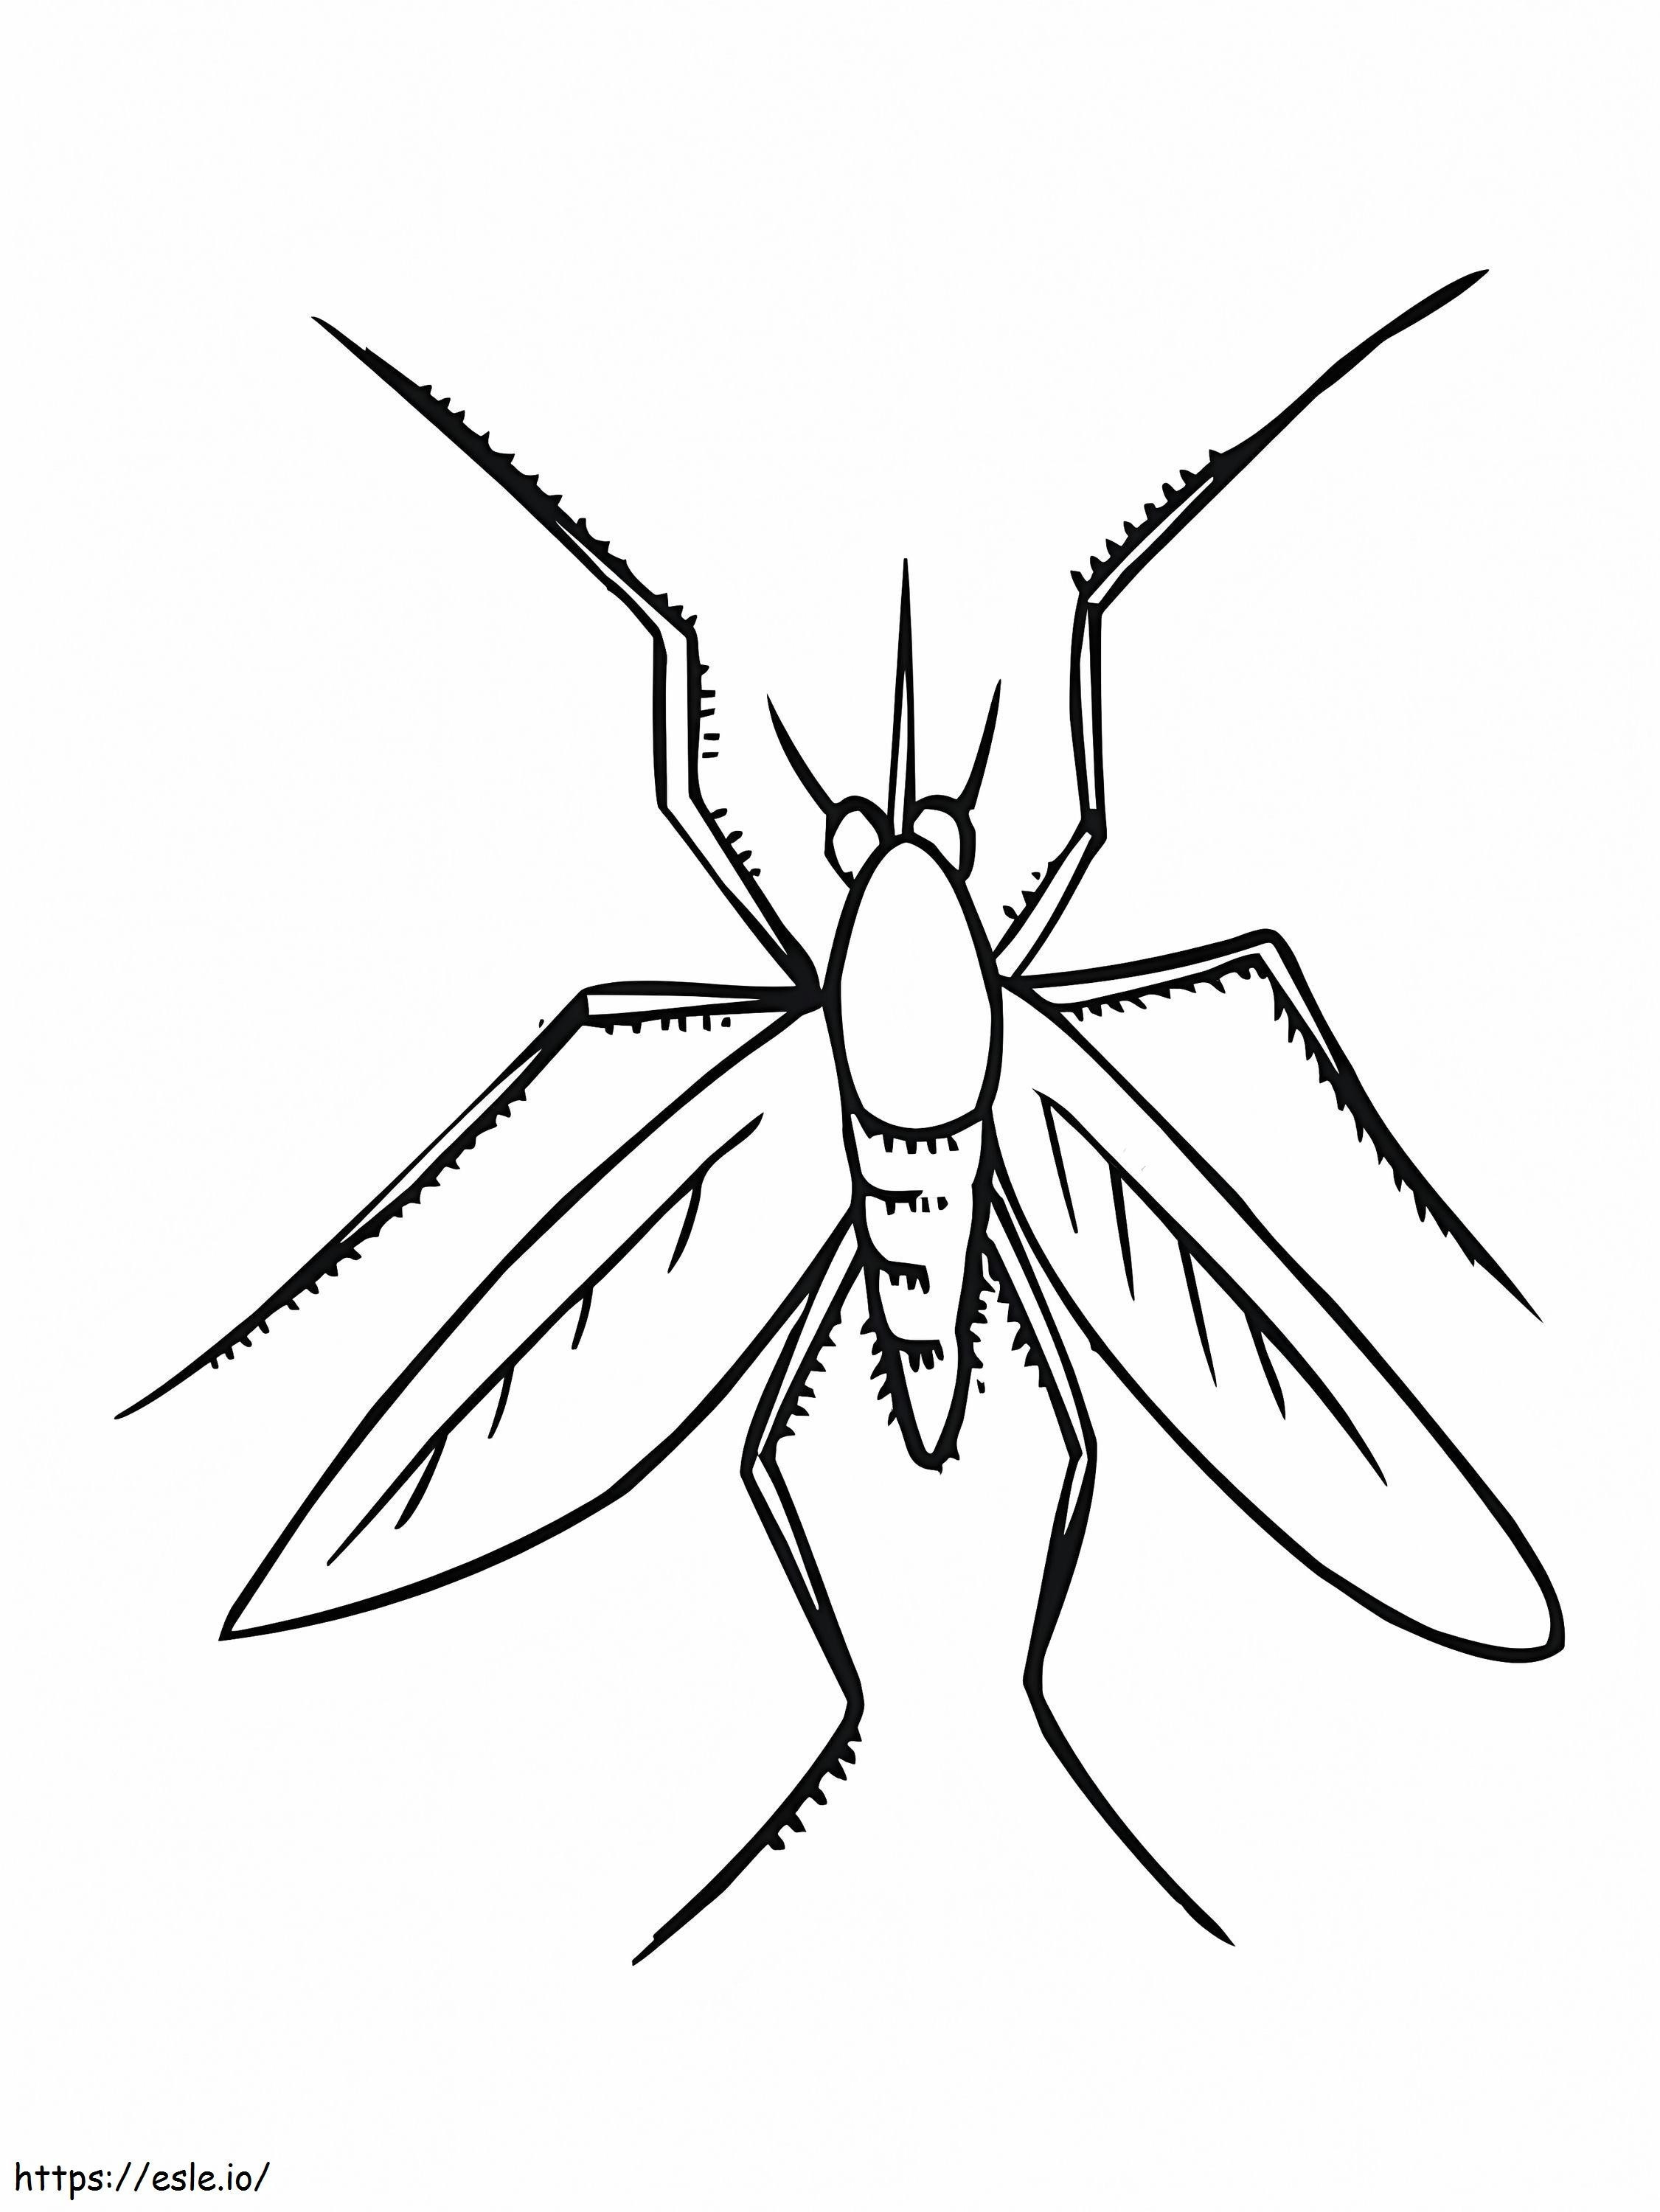 Coloriage Insecte moustique à imprimer dessin